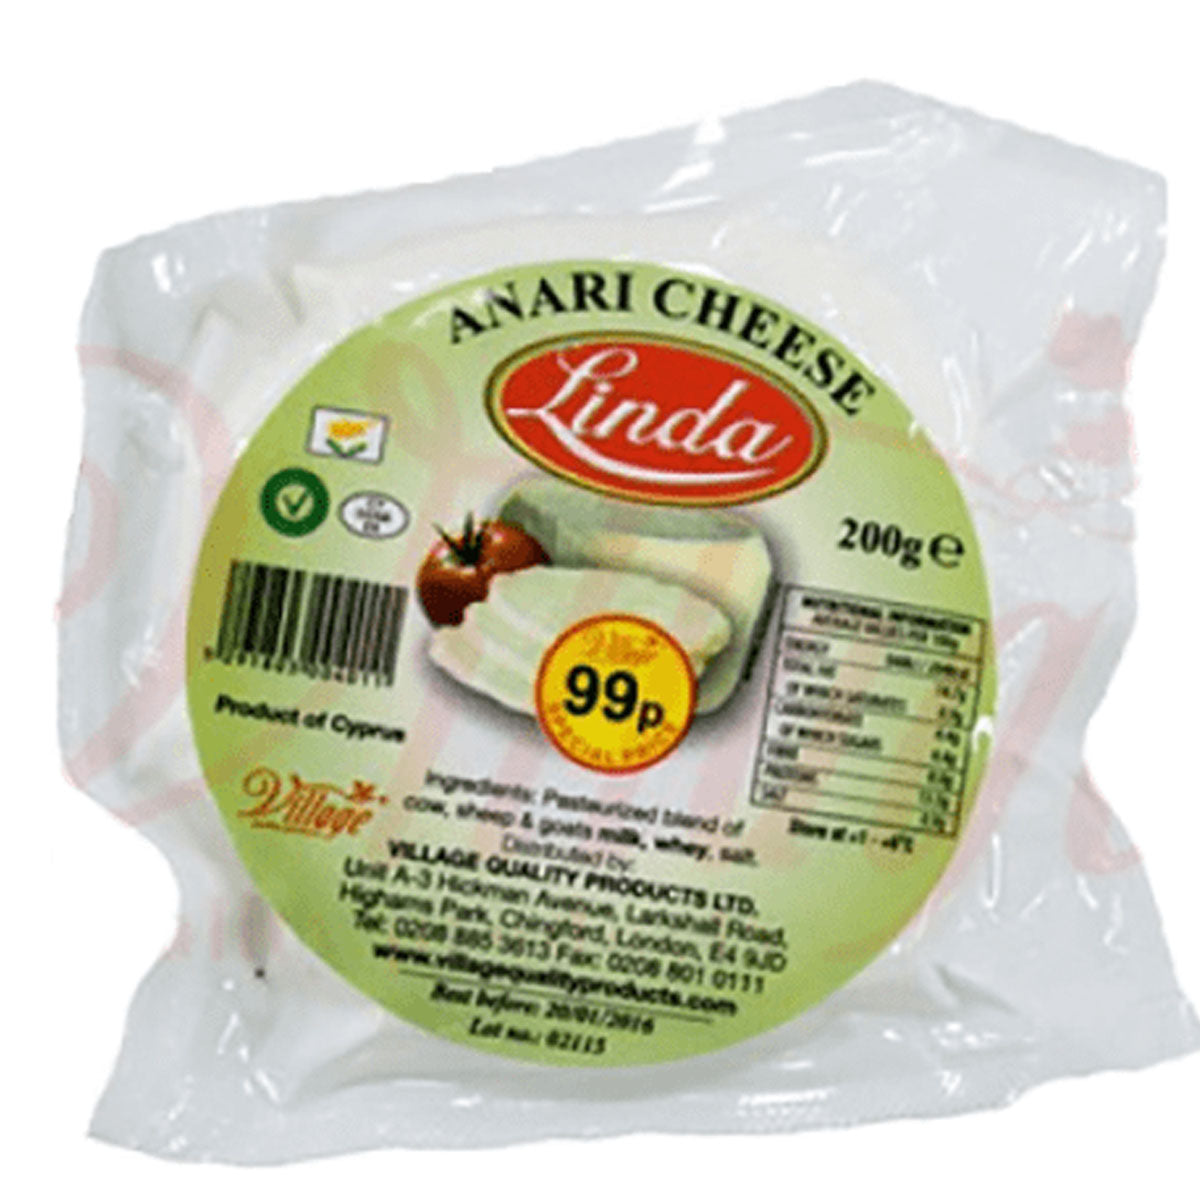 Linda - Anari Cheese - 200g from Linda.